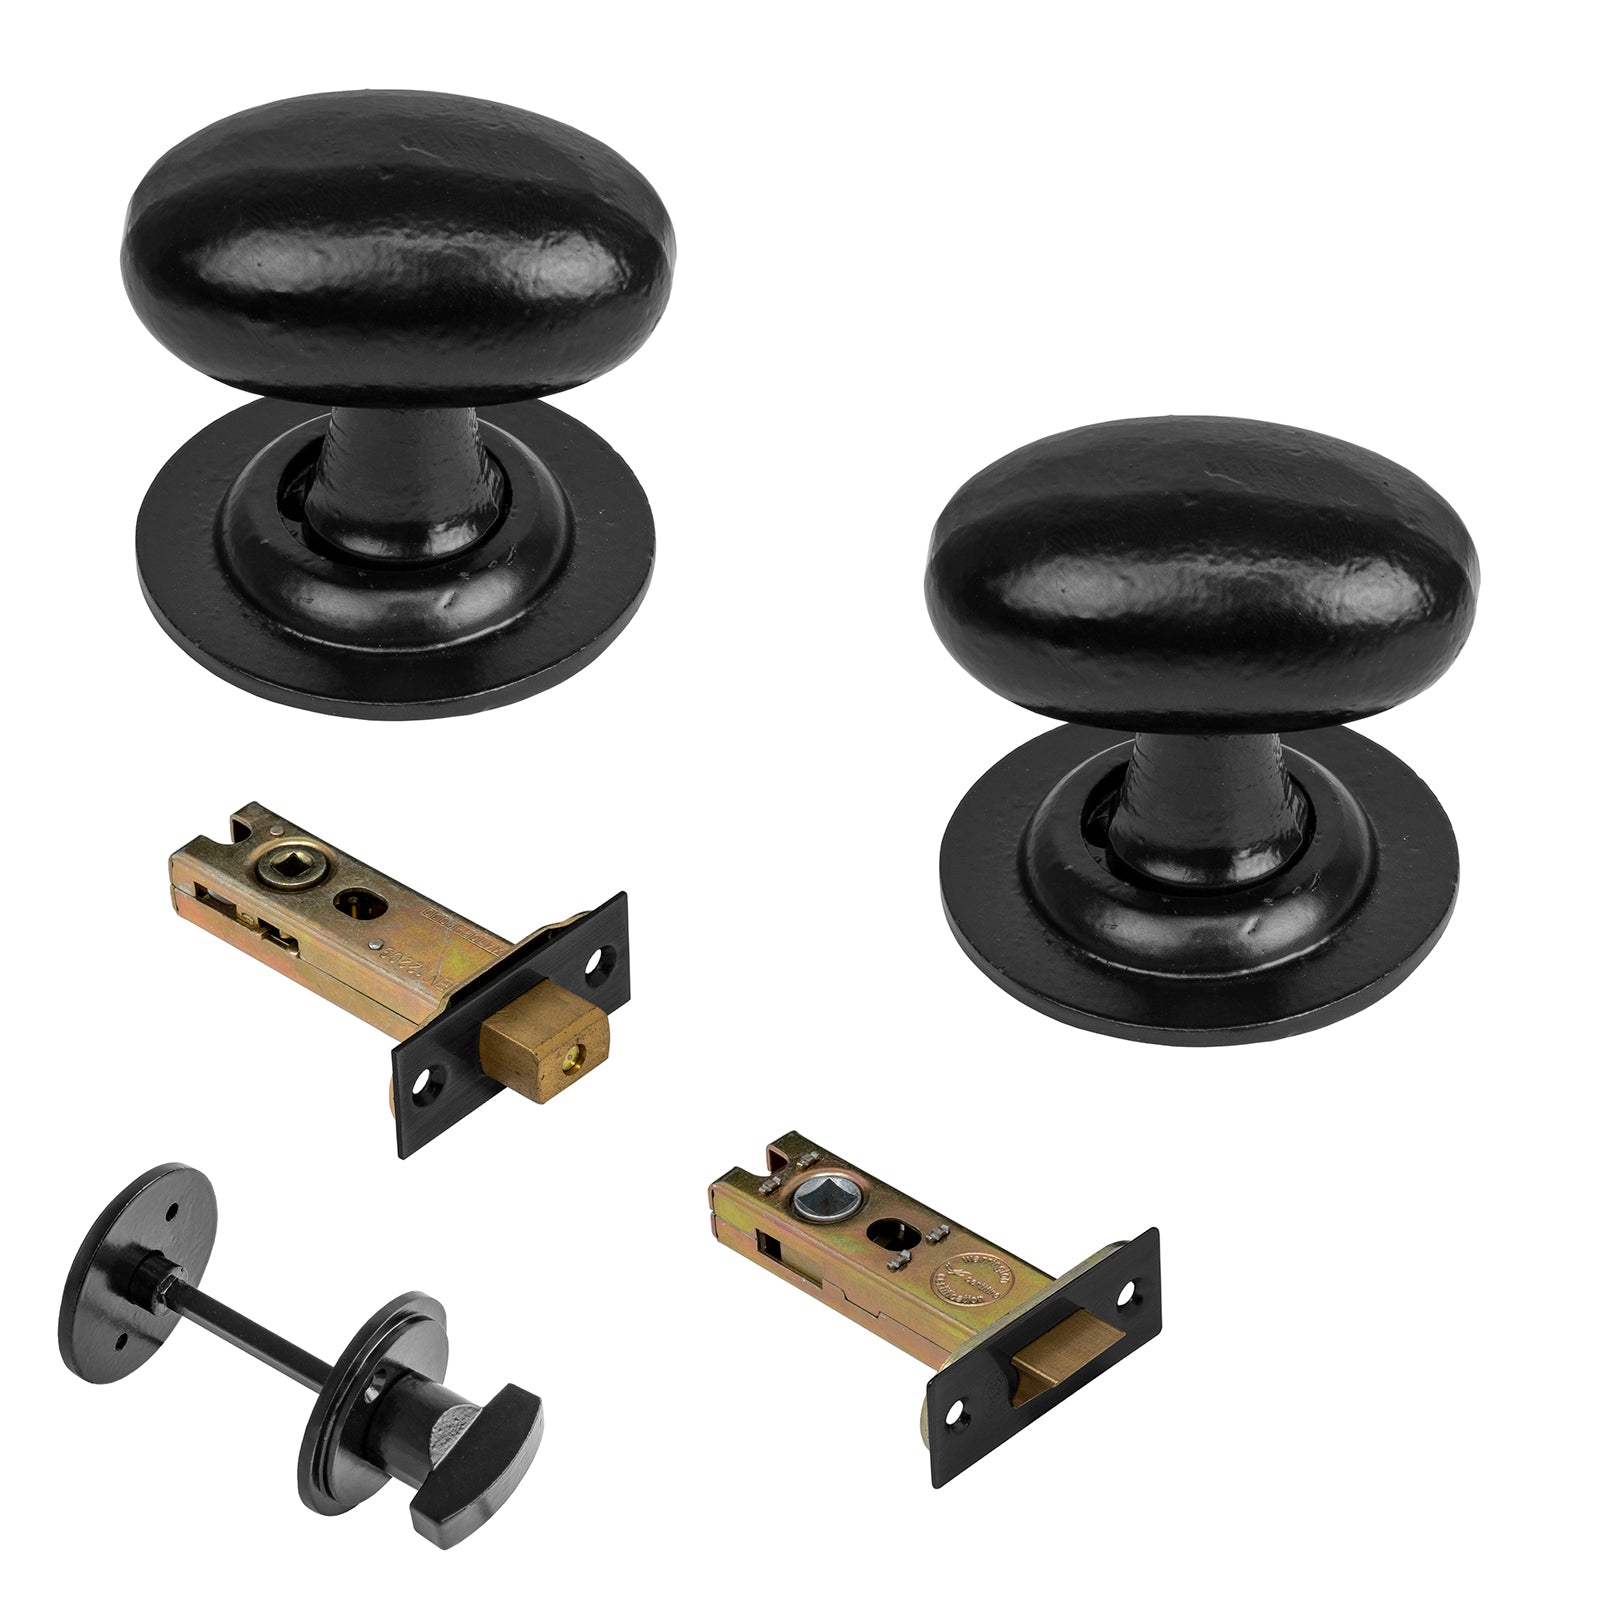 Oval black cast iron door knobs 3 inch bathroom set